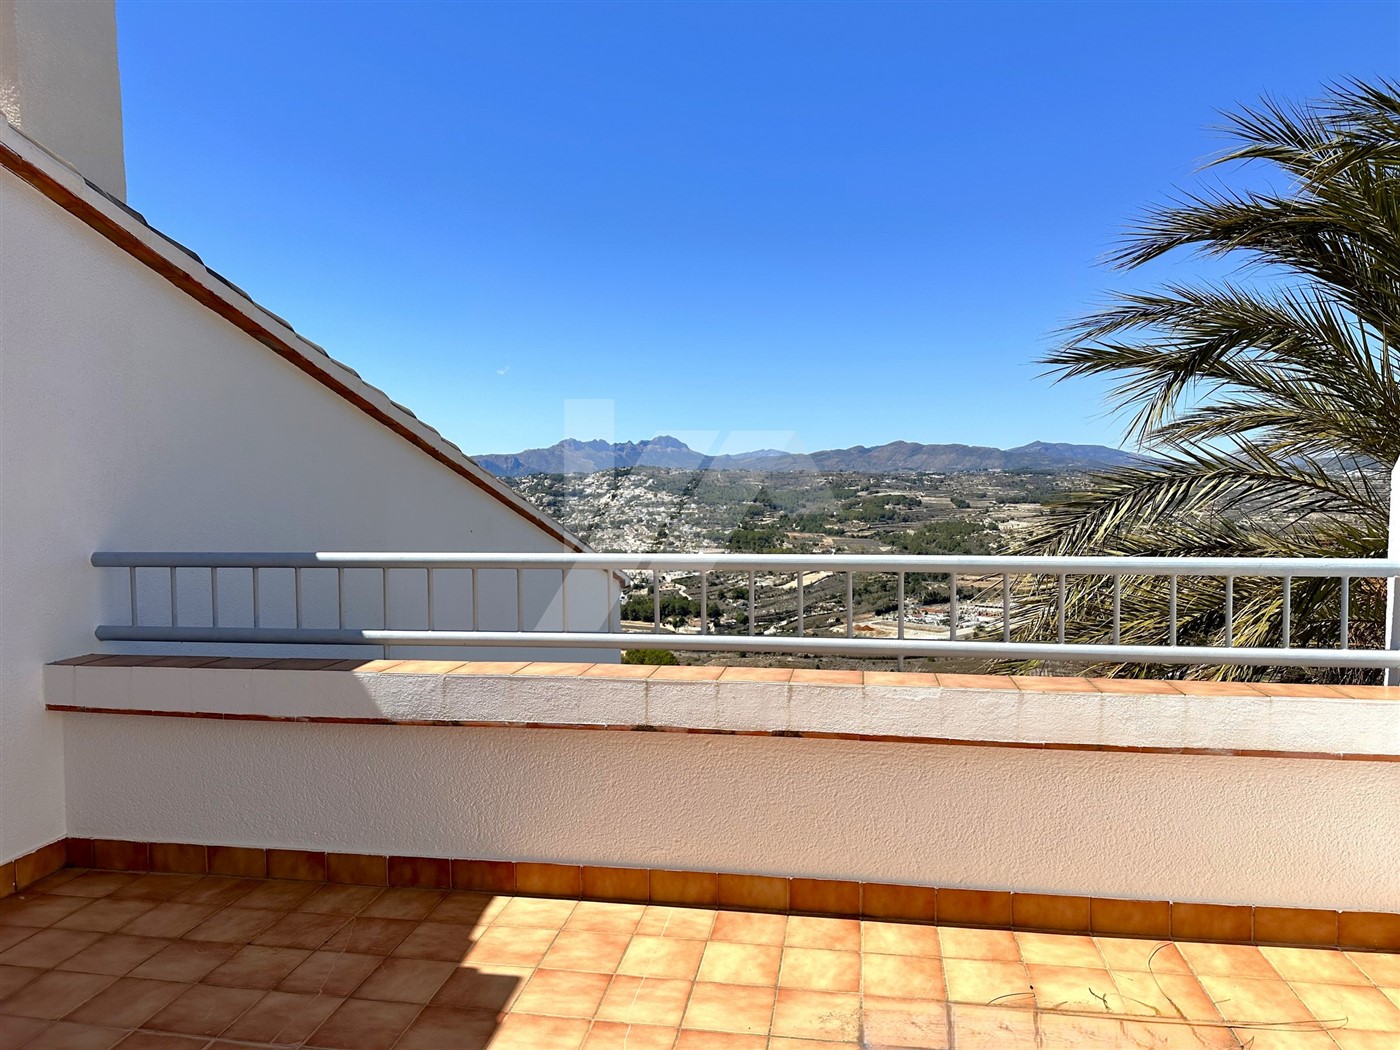 Uitzonderlijke villa te koop met uitzicht op zee in Moraira.